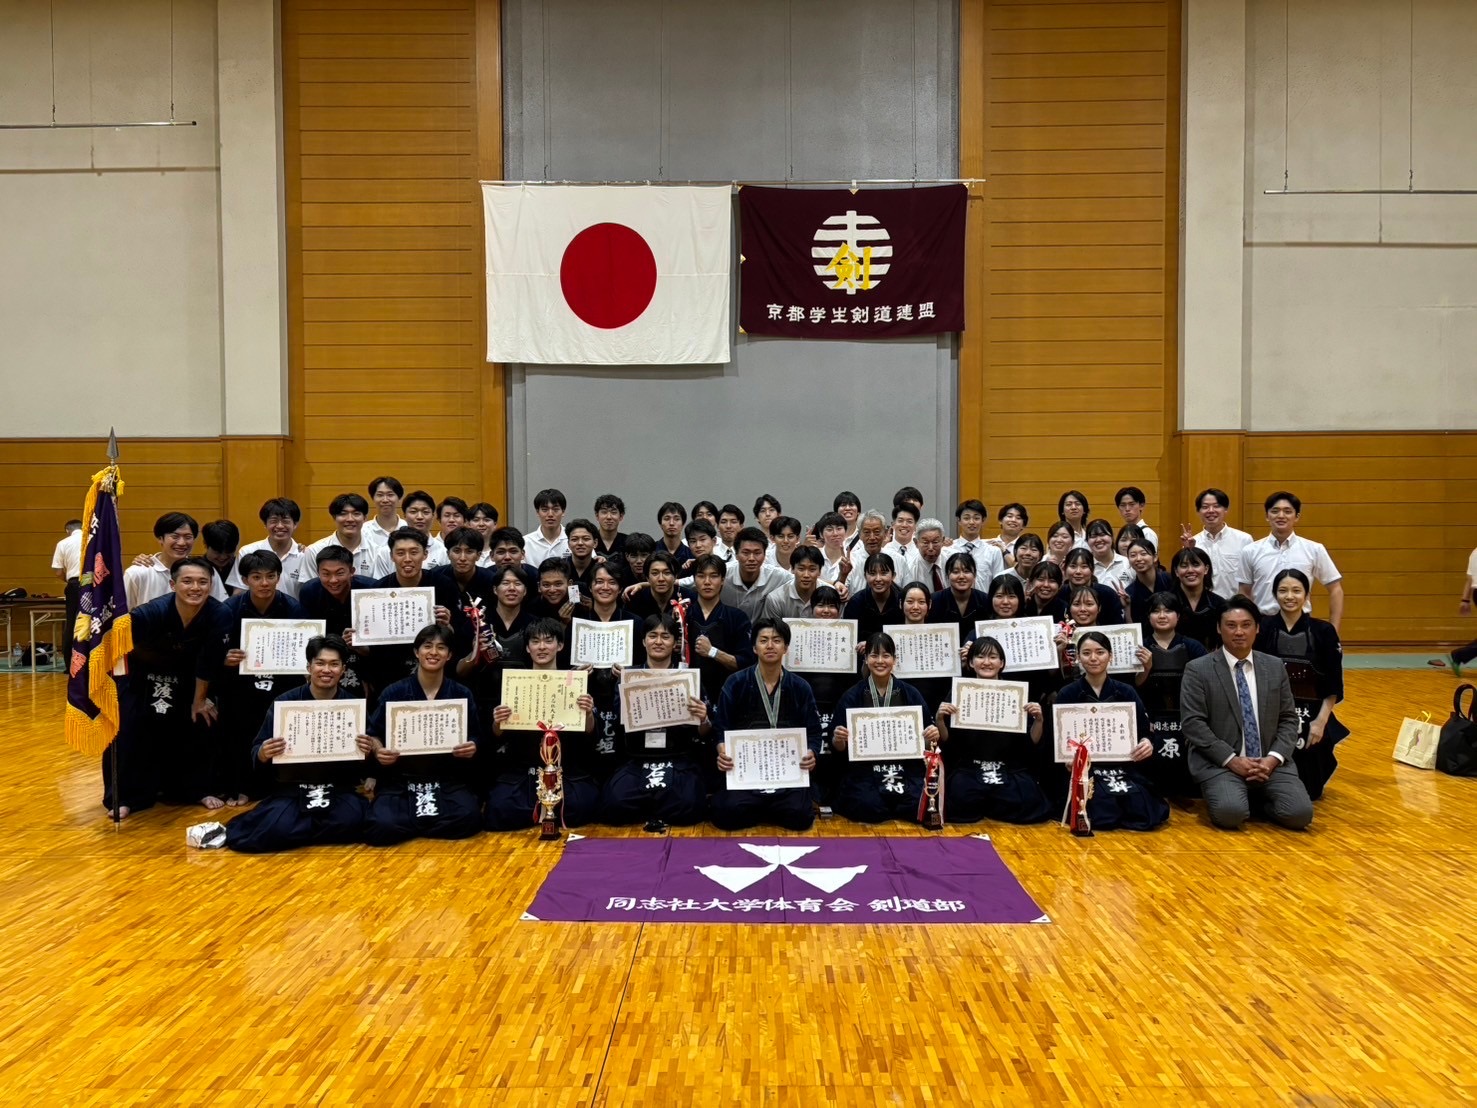 【結果報告】第66回京滋学生剣道大会